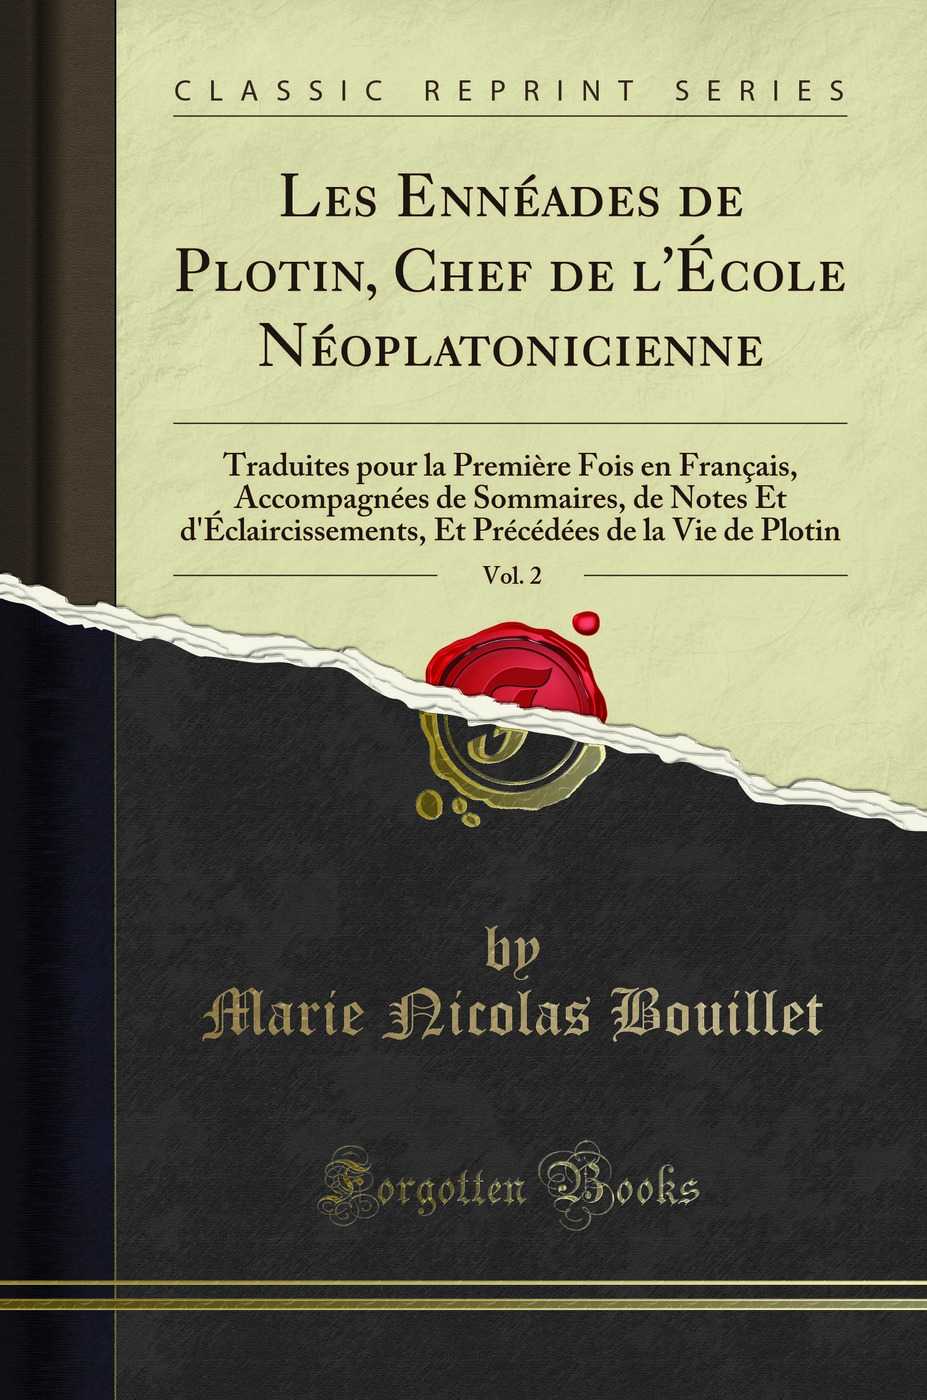 Les EnnÃ ades de Plotin, Chef de l'Ã‰cole NÃ oplatonicienne, Vol. 2 - Marie Nicolas Bouillet